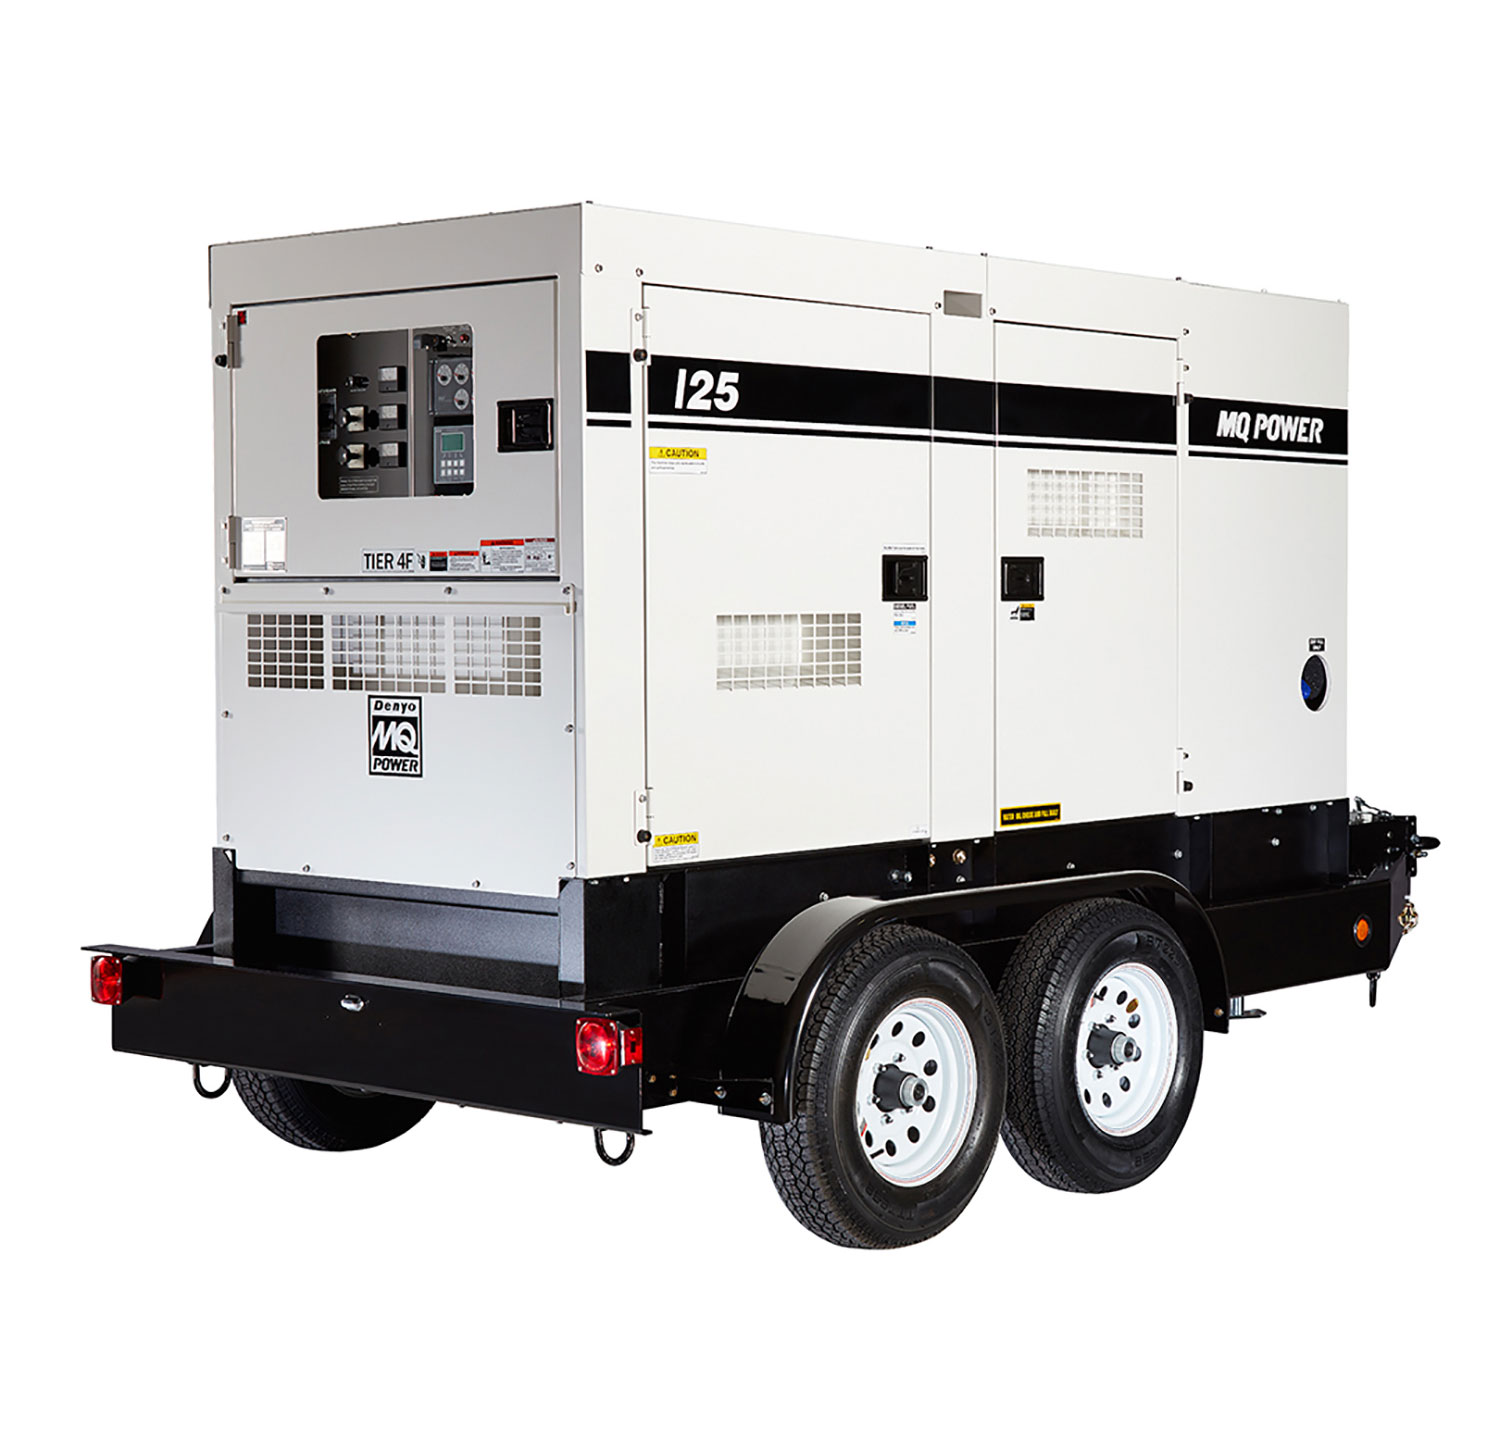 burgemeester Seminarie vod 100kw Diesel Generator | Chicago Portable Power Generator Rental